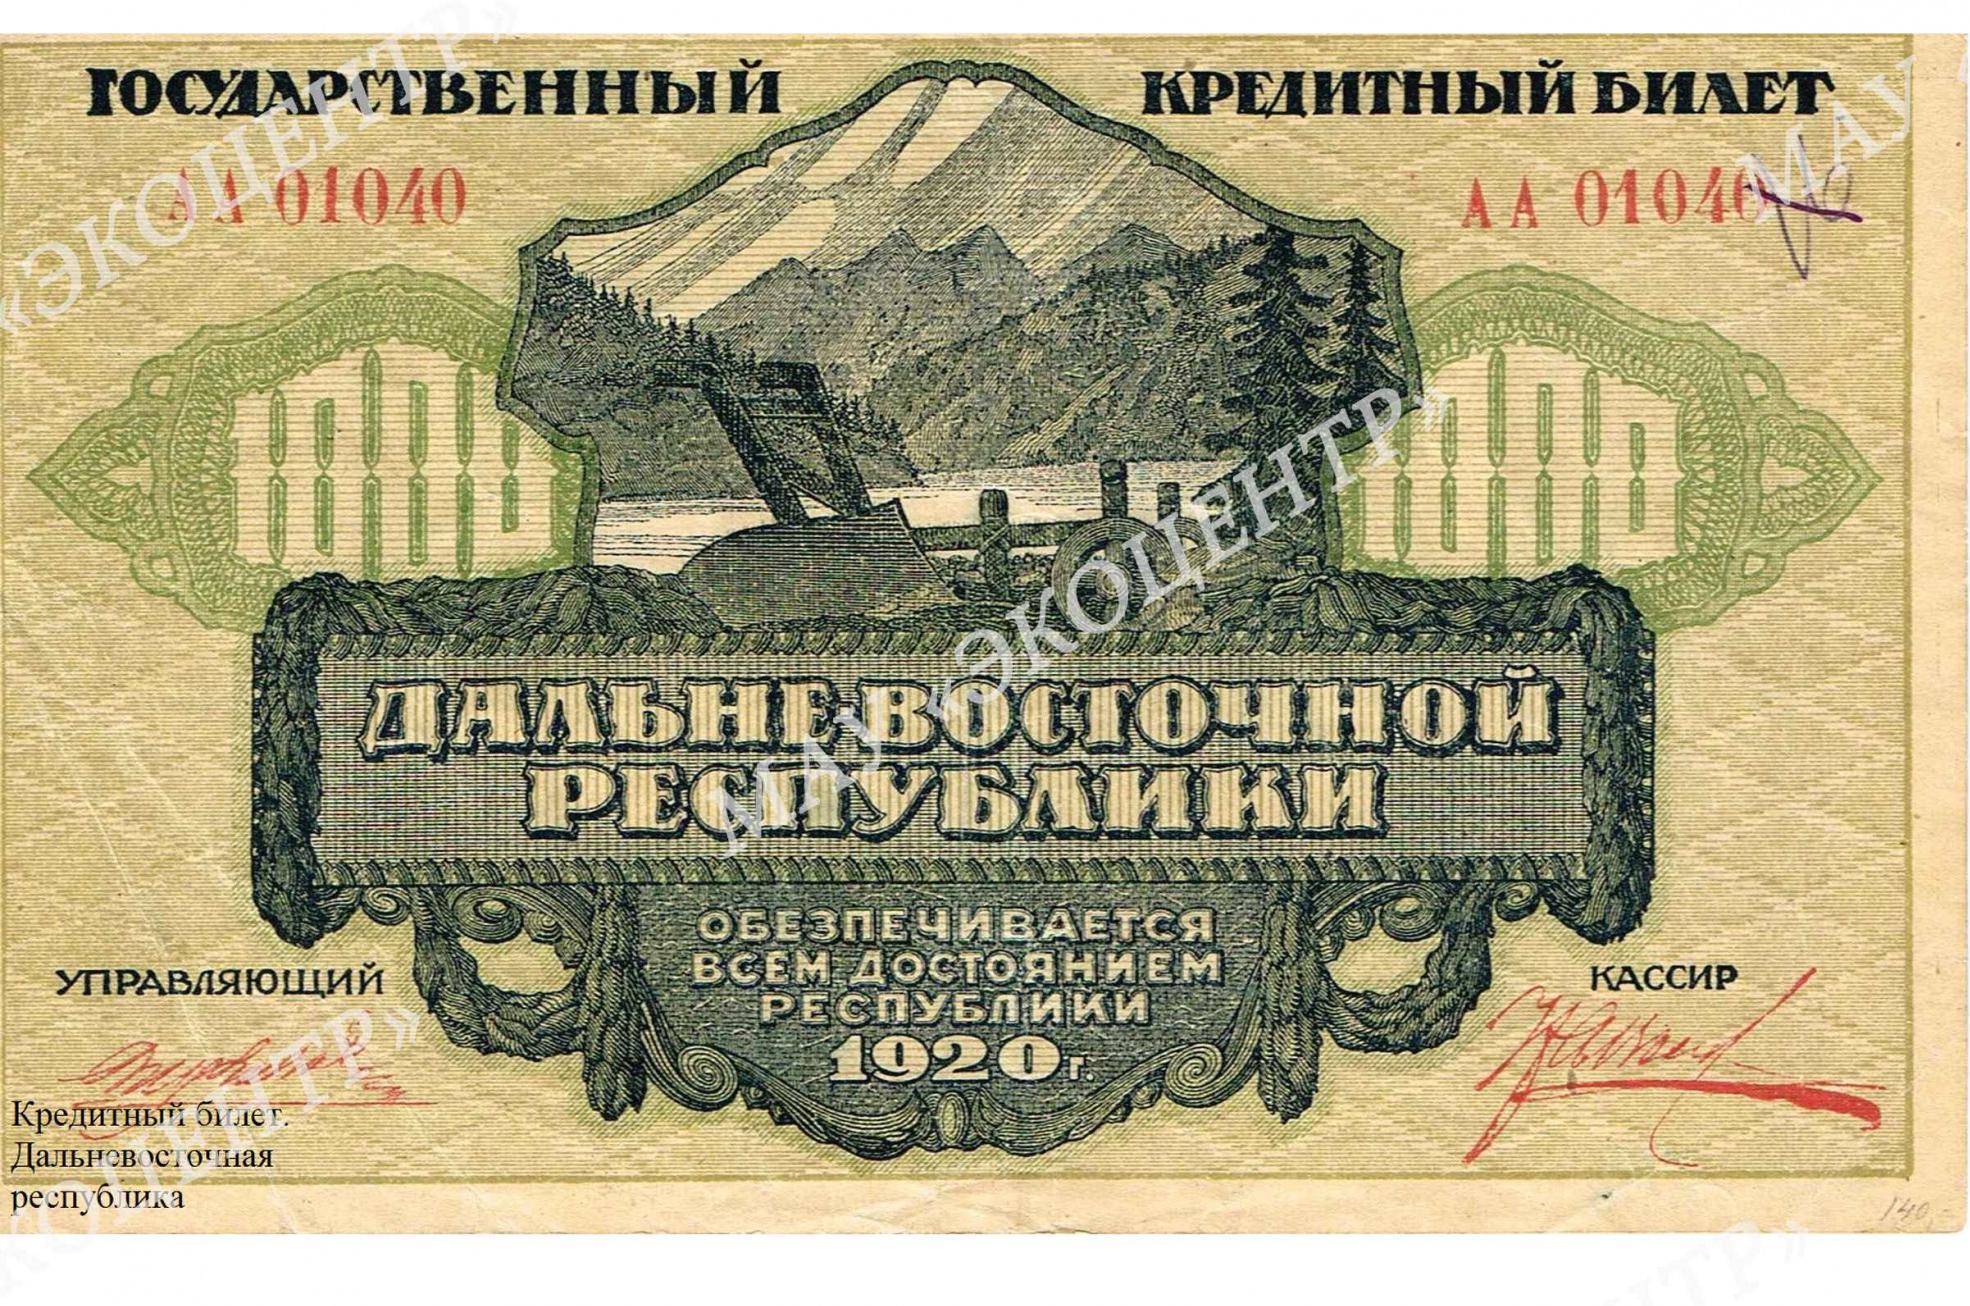 Кредитный билет. Дальневосточная республика